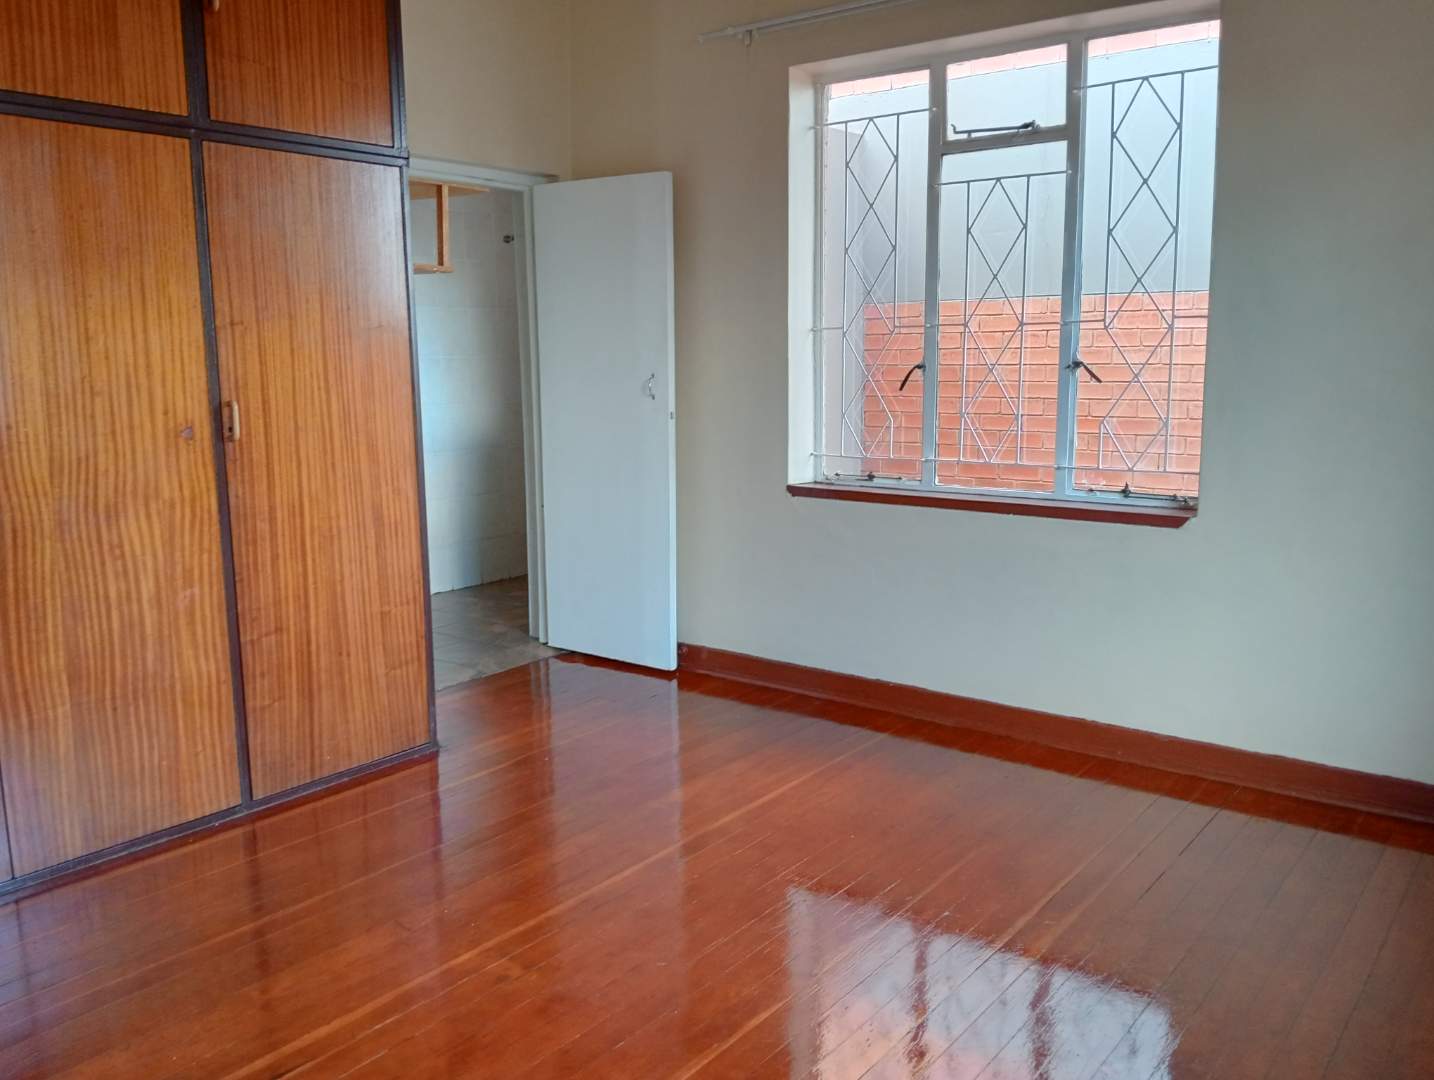 To Let 3 Bedroom Property for Rent in Alberton Gauteng